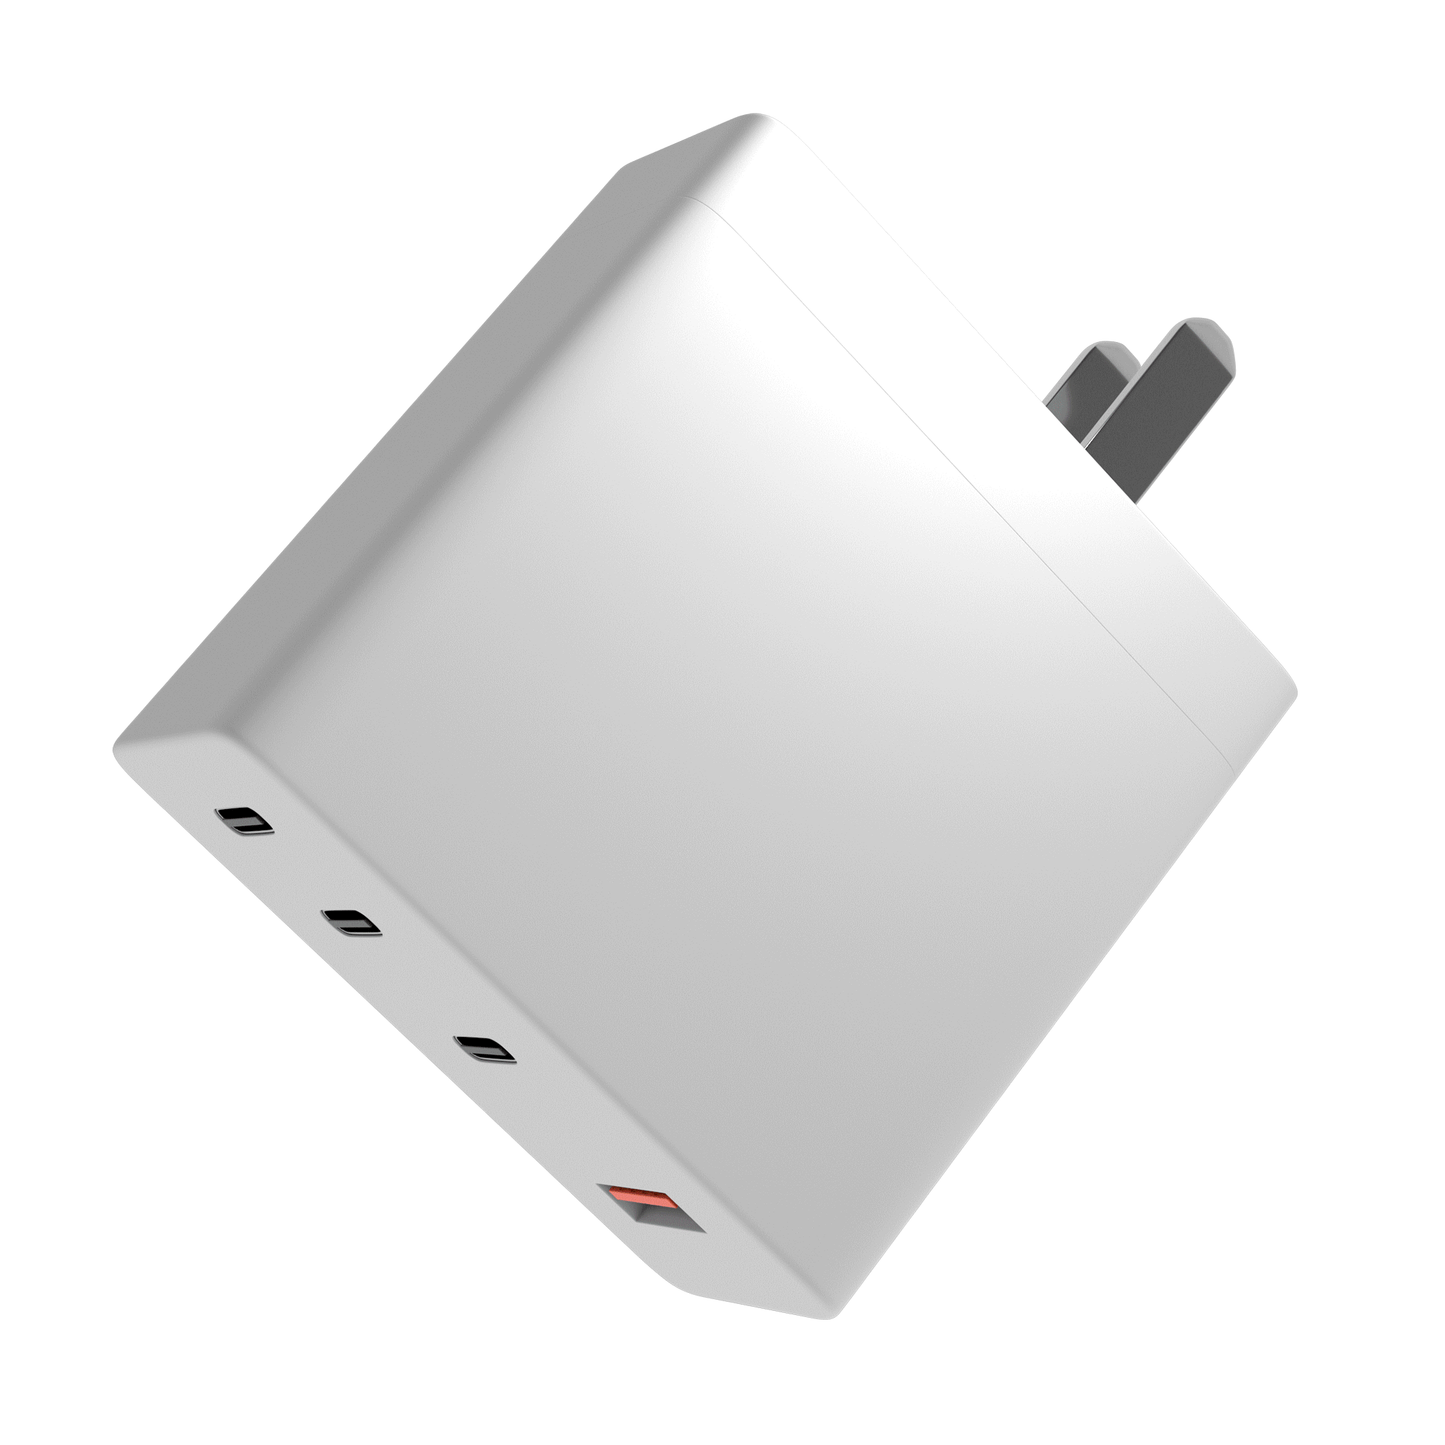 Ampsentrix 100W 4 Port Charging Brick 3 * USB-C 1 * USB-A